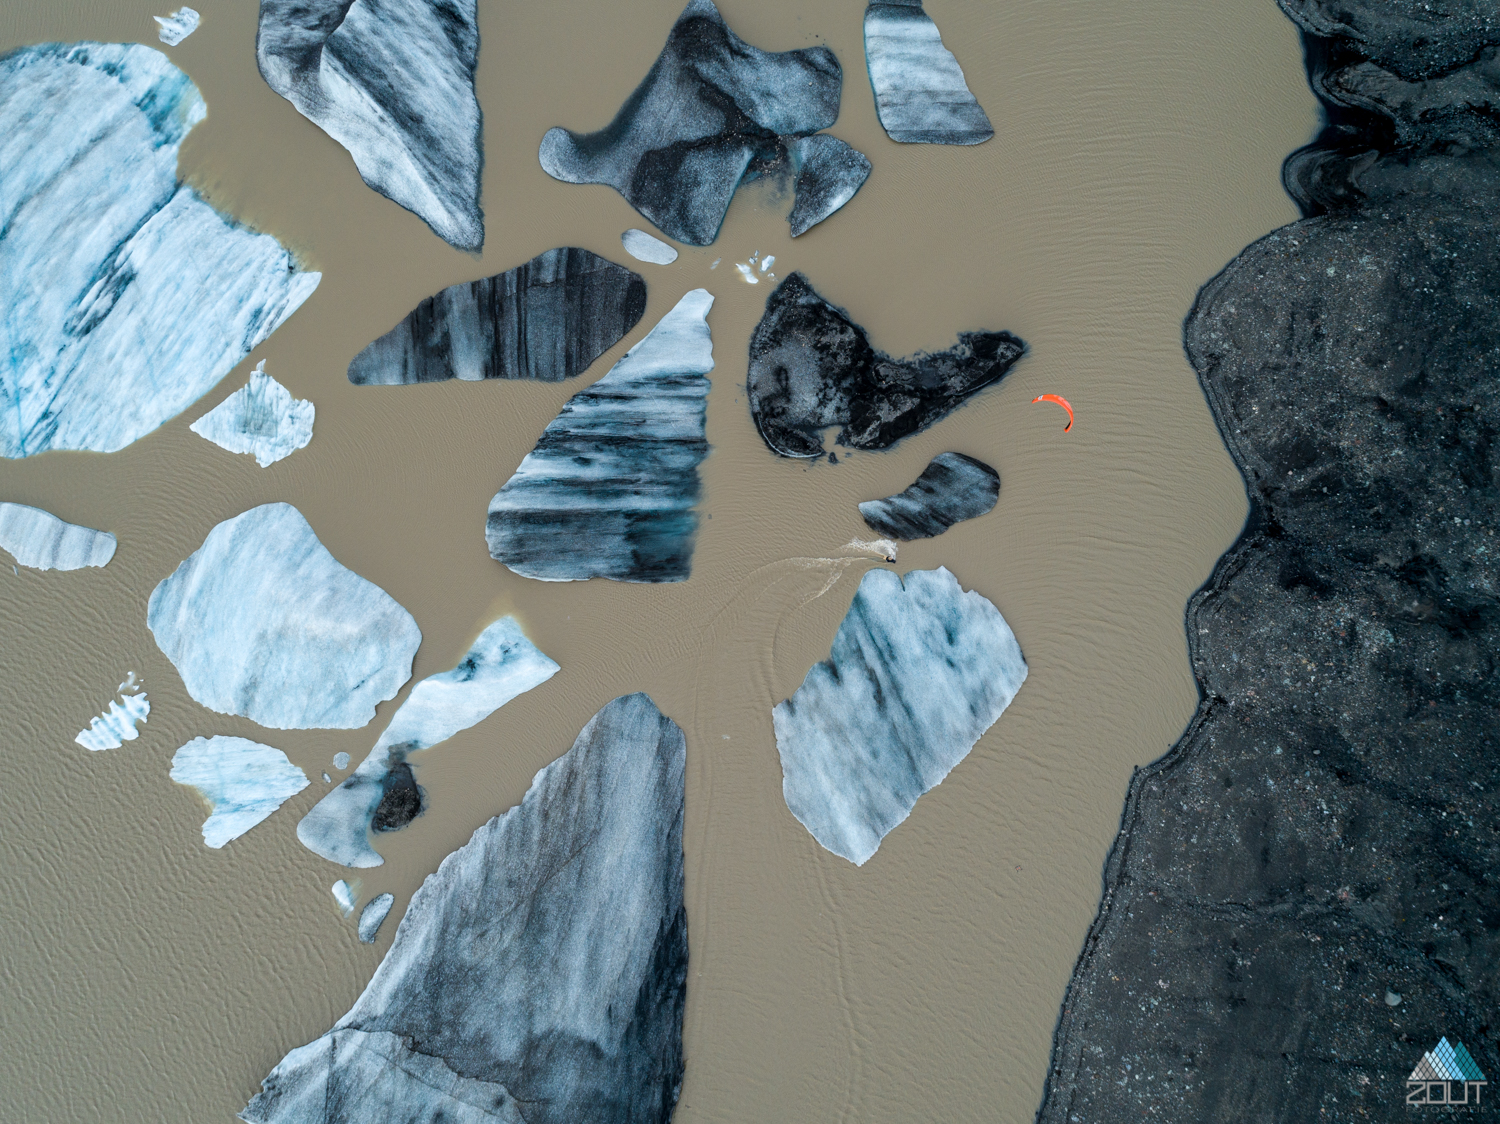 Roderick fotograaf rein rijke Pijls kitesurfend ijsbergen